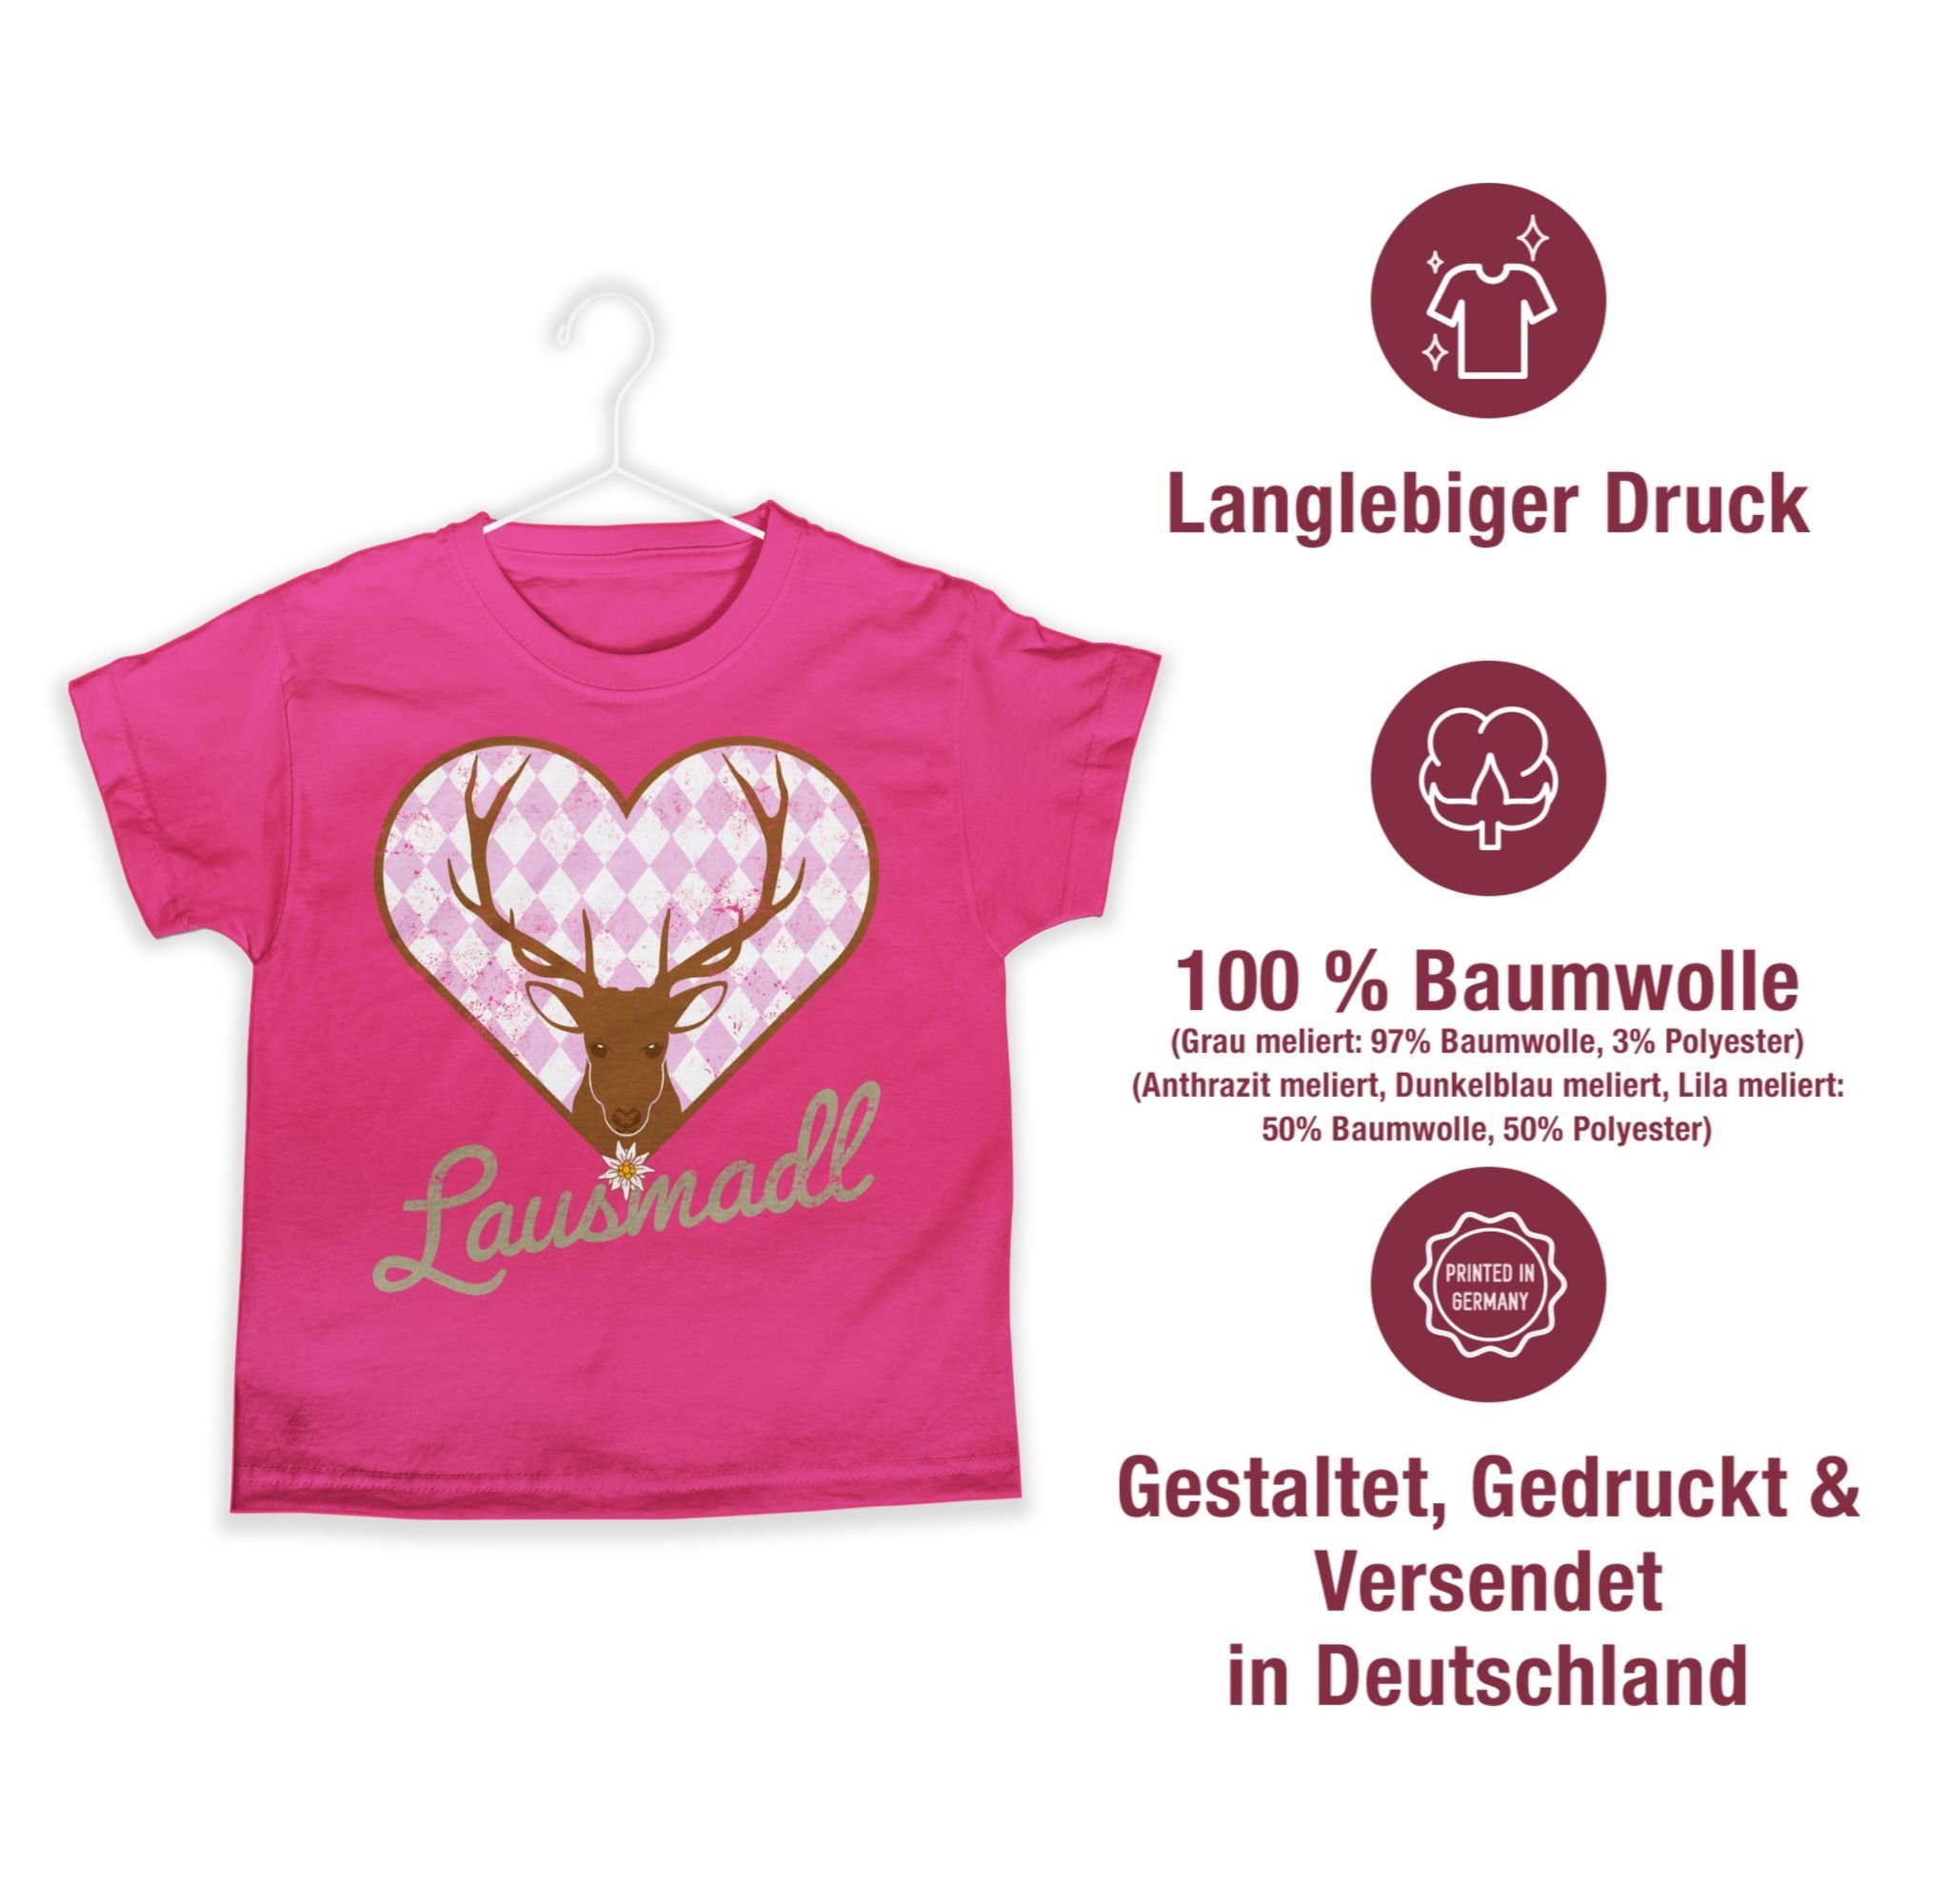 1 T-Shirt Lausmadl Oktoberfest Shirtracer Hirsch für Kinder Mode Outfit Fuchsia